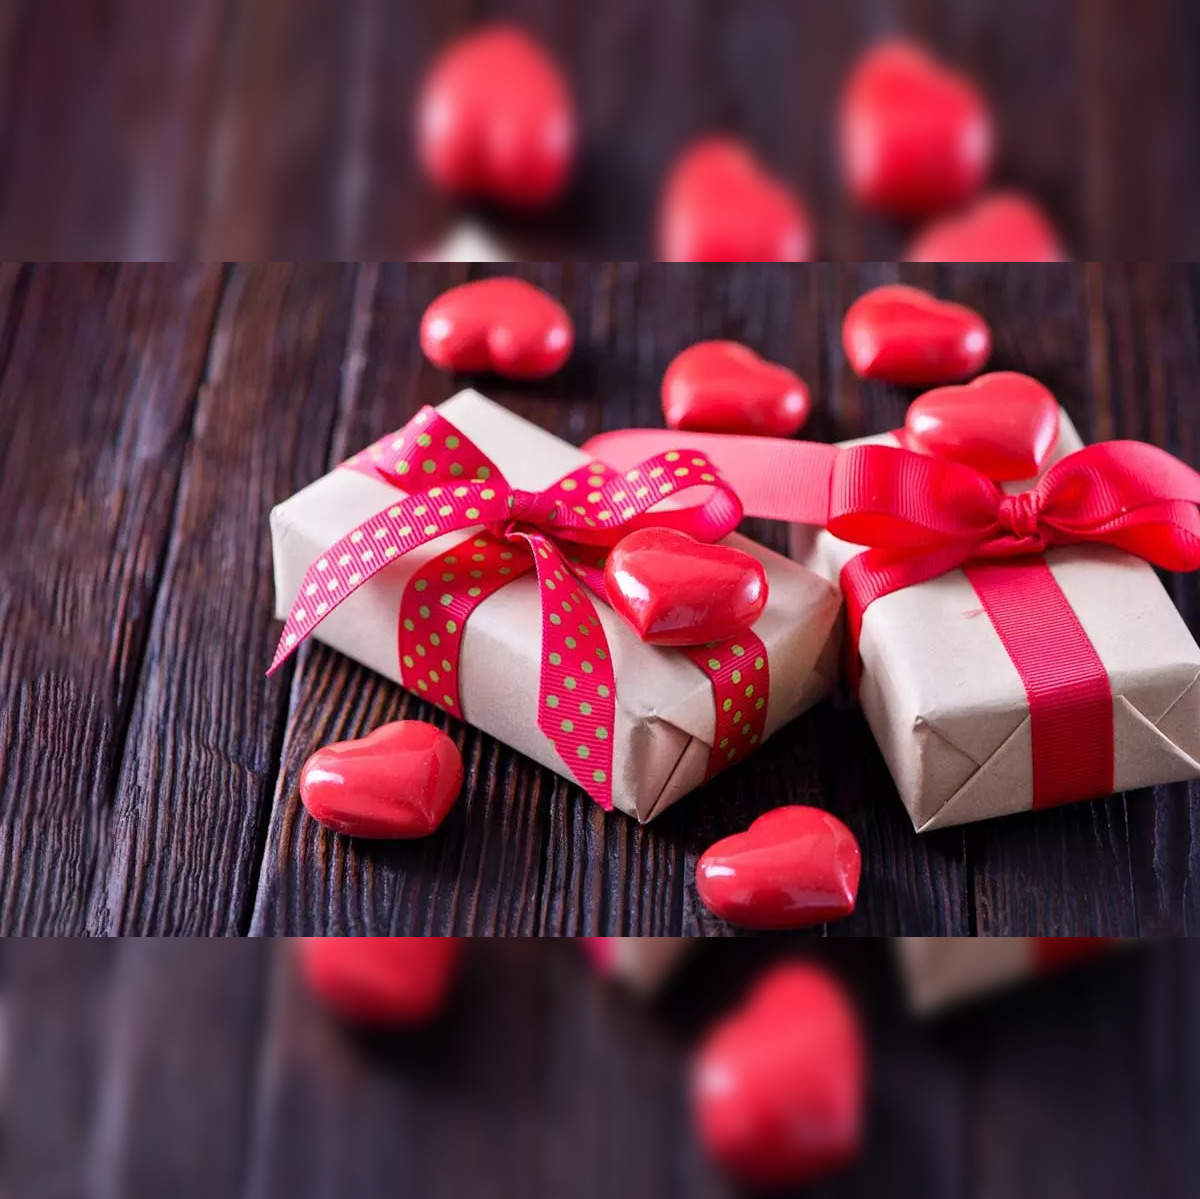 7 Days Of Valentine Gift Box - Gifts By Rashi